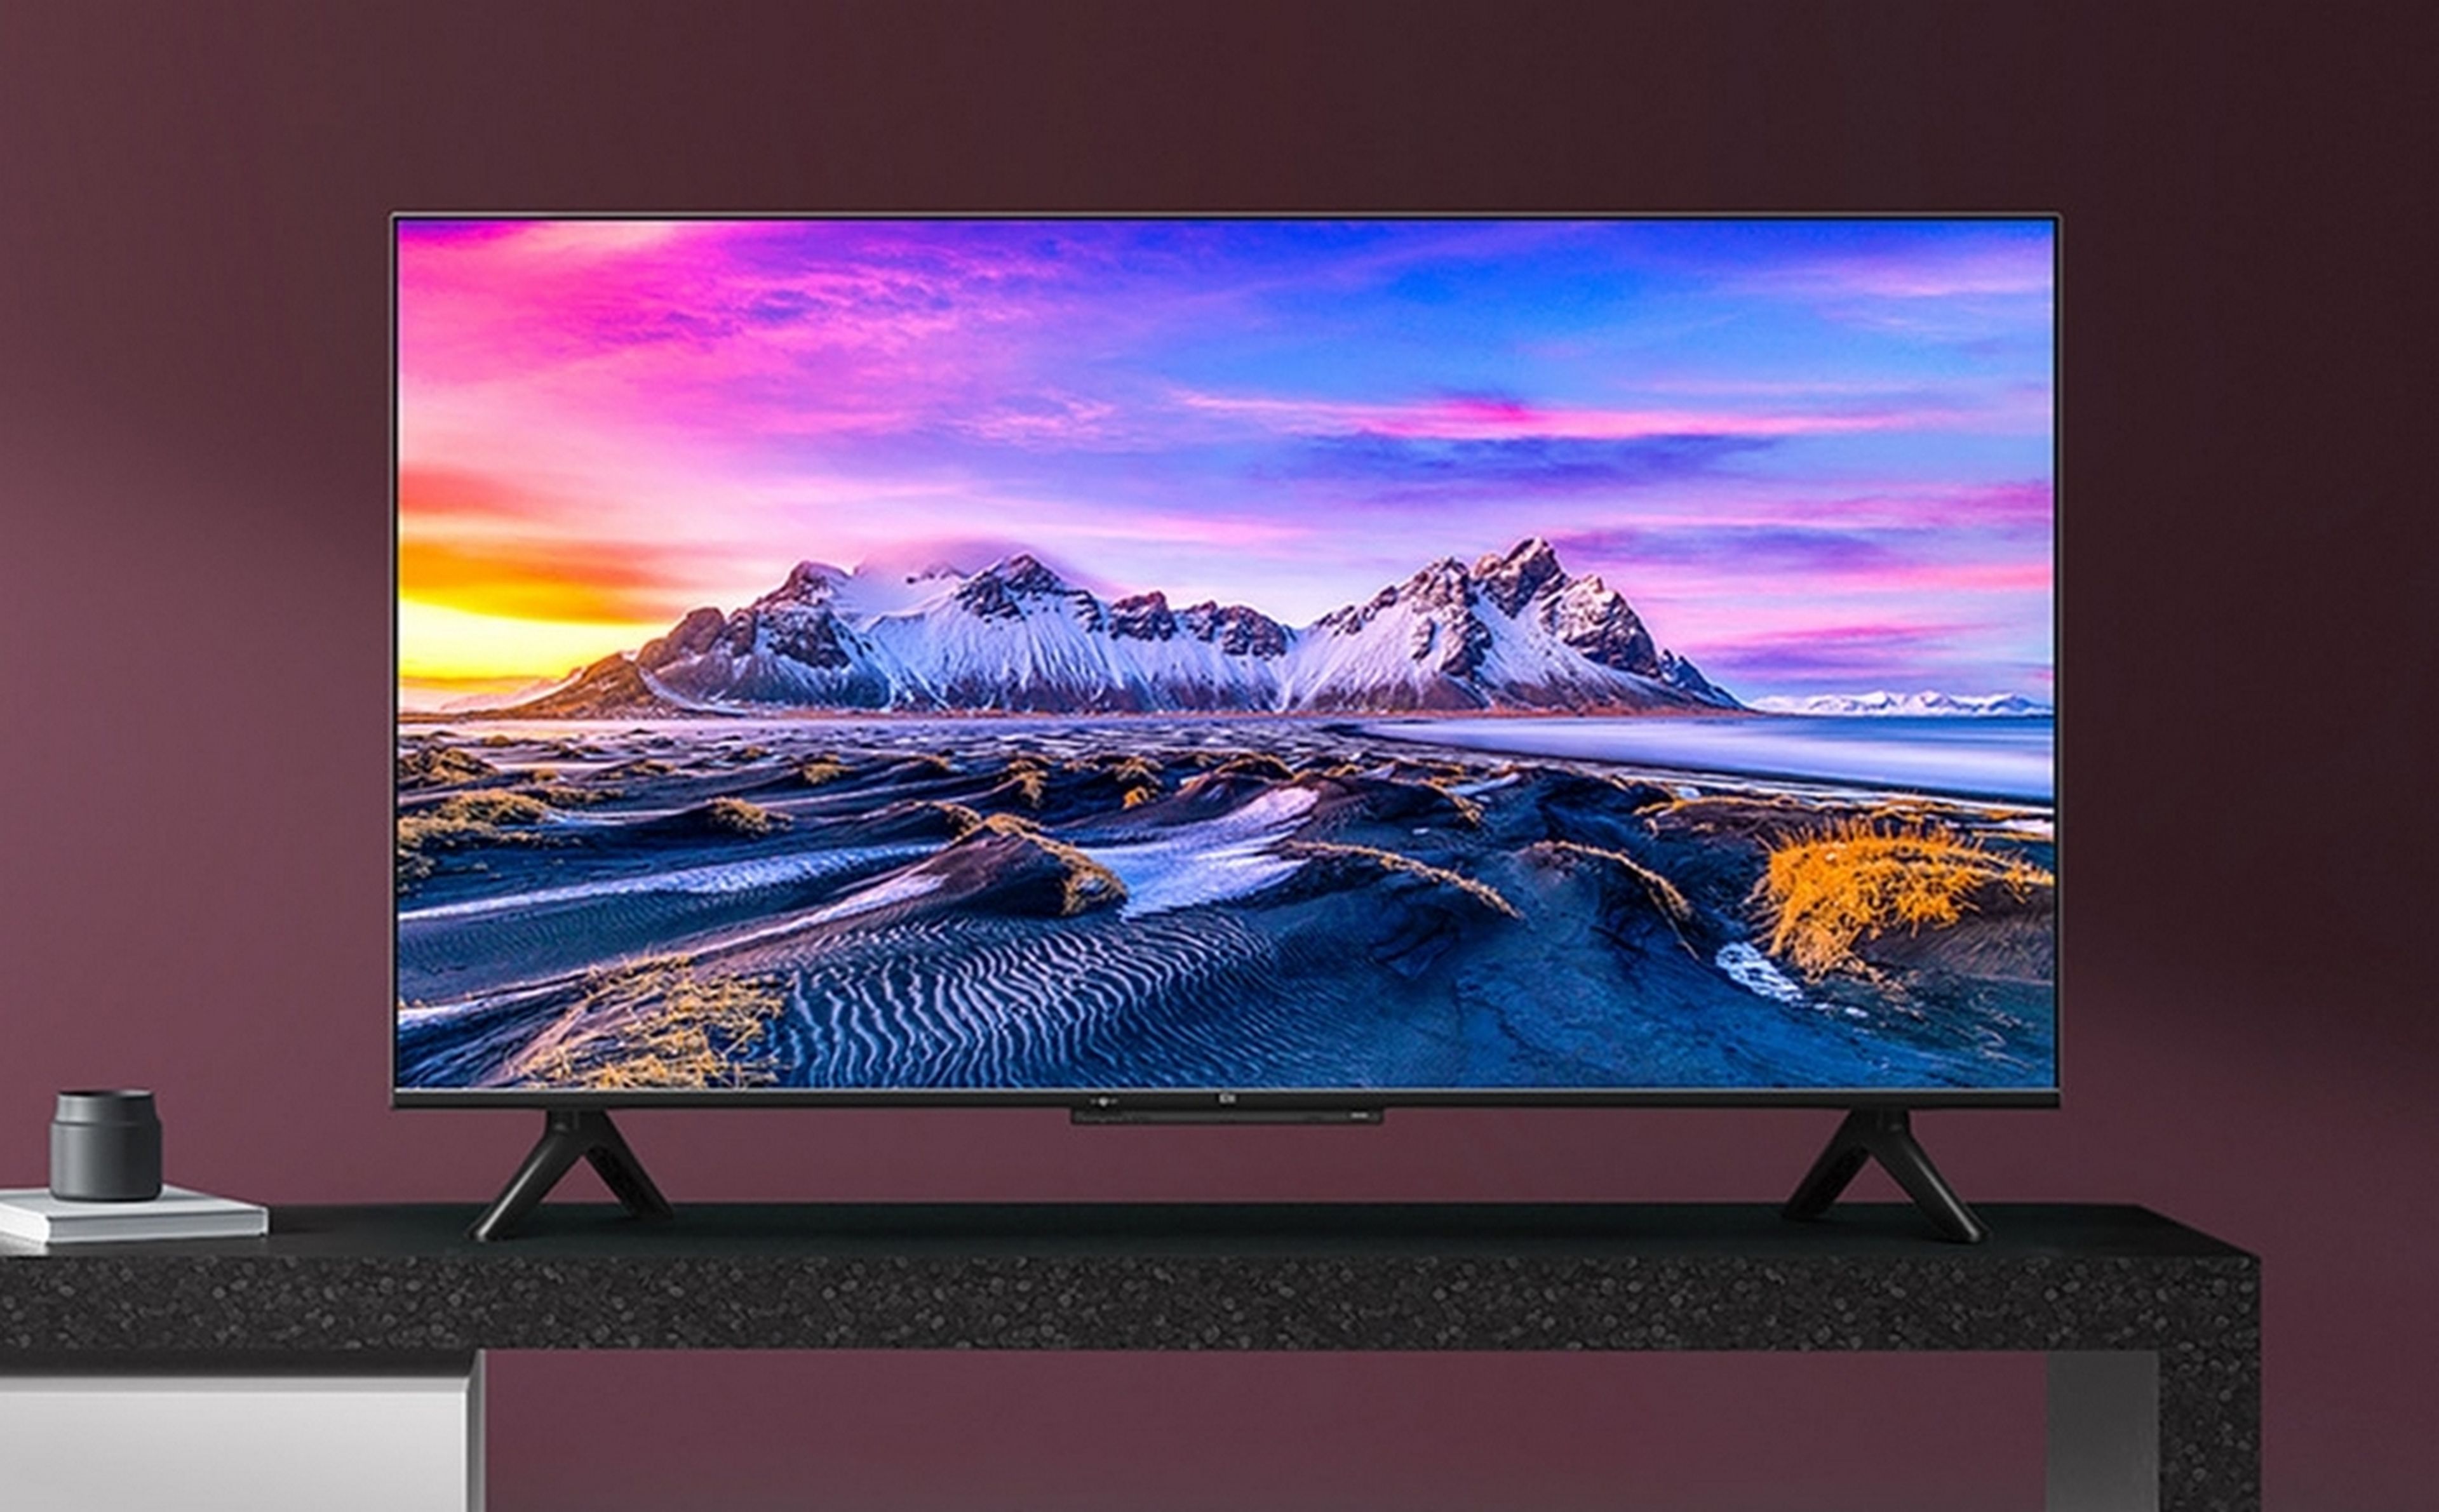 El televisor Xiaomi Mi TV P1 de 43 pulgadas con resolución 4K y Dolby Vision, casi regalado: solo 214 euros